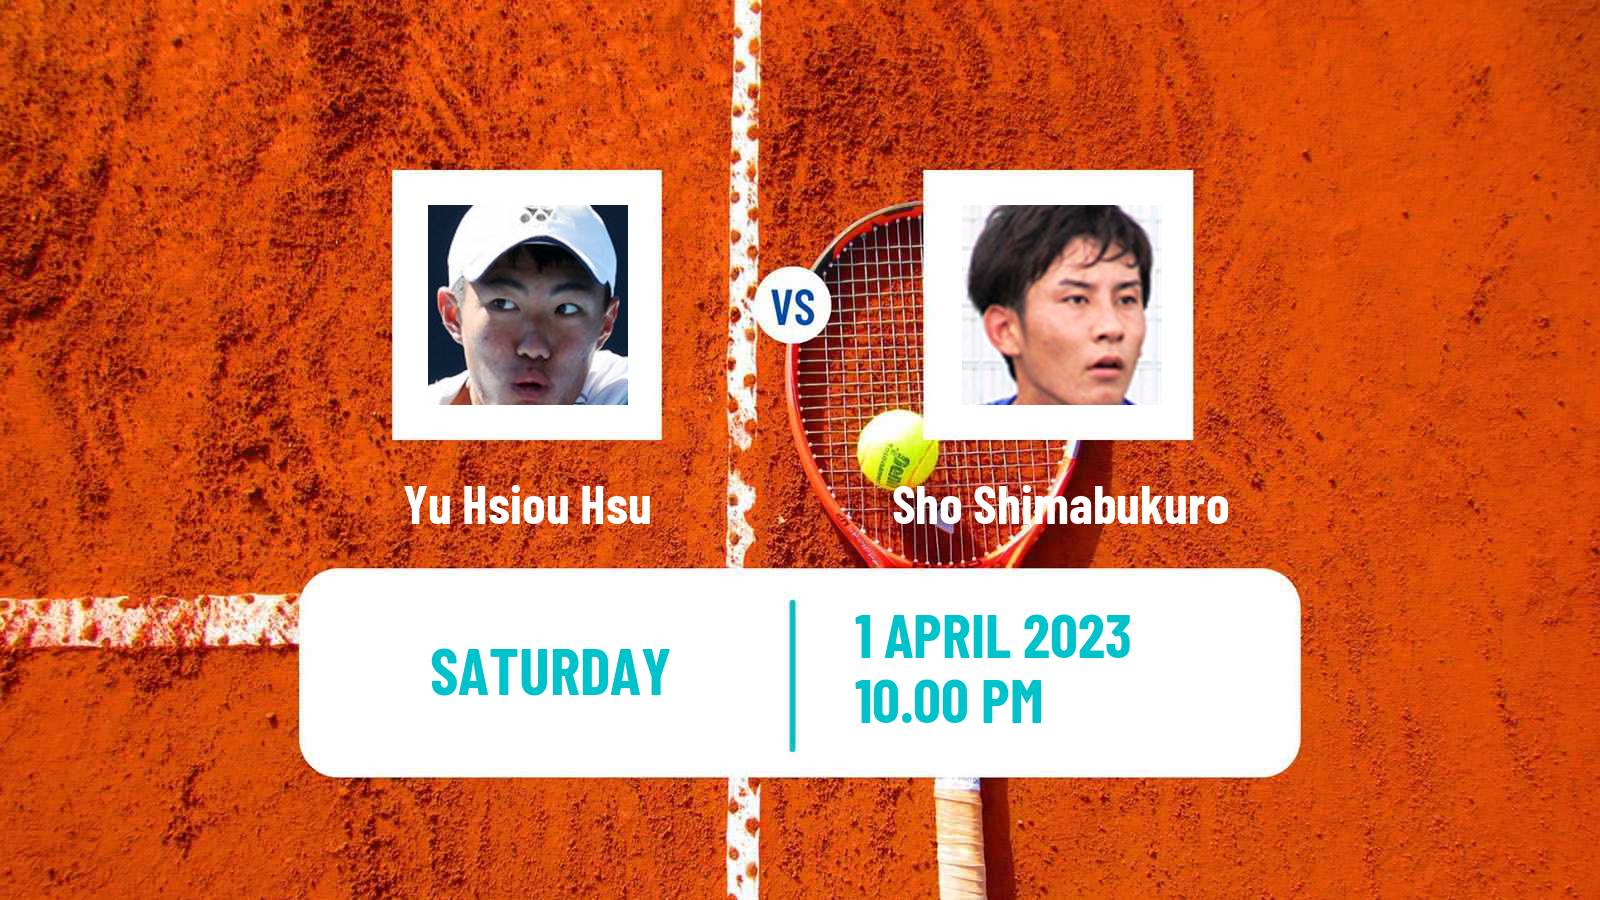 Tennis ITF Tournaments Yu Hsiou Hsu - Sho Shimabukuro